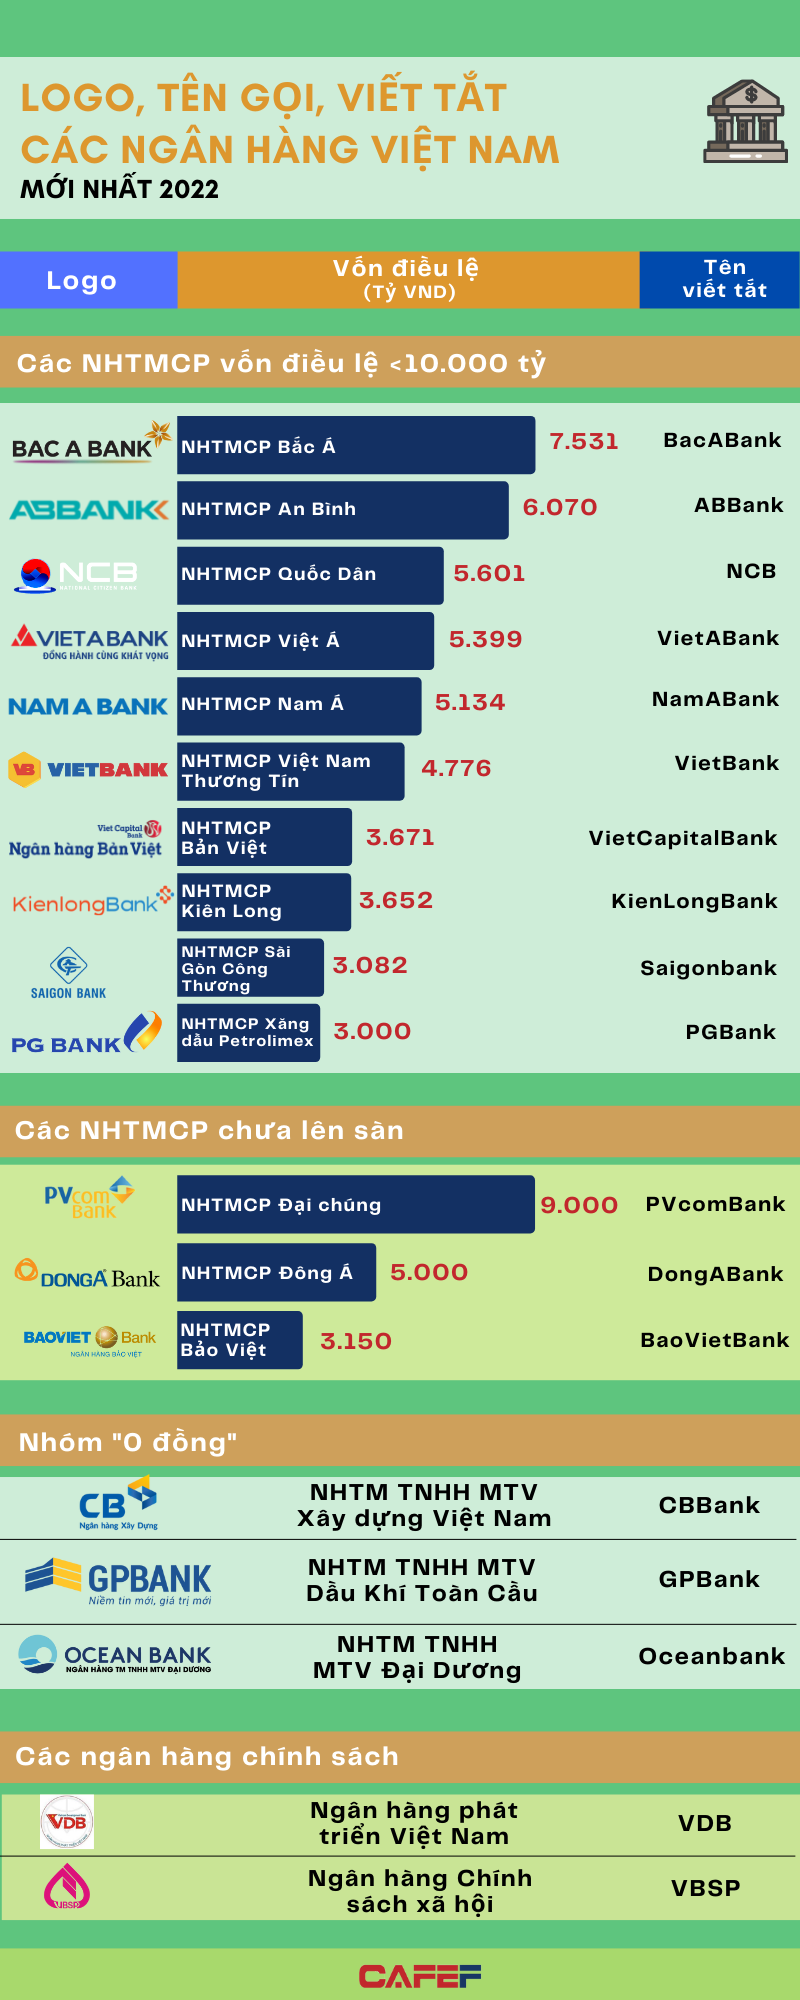 Tên gọi, logo và quy mô vốn điều lệ của các ngân hàng Việt đầu năm ...